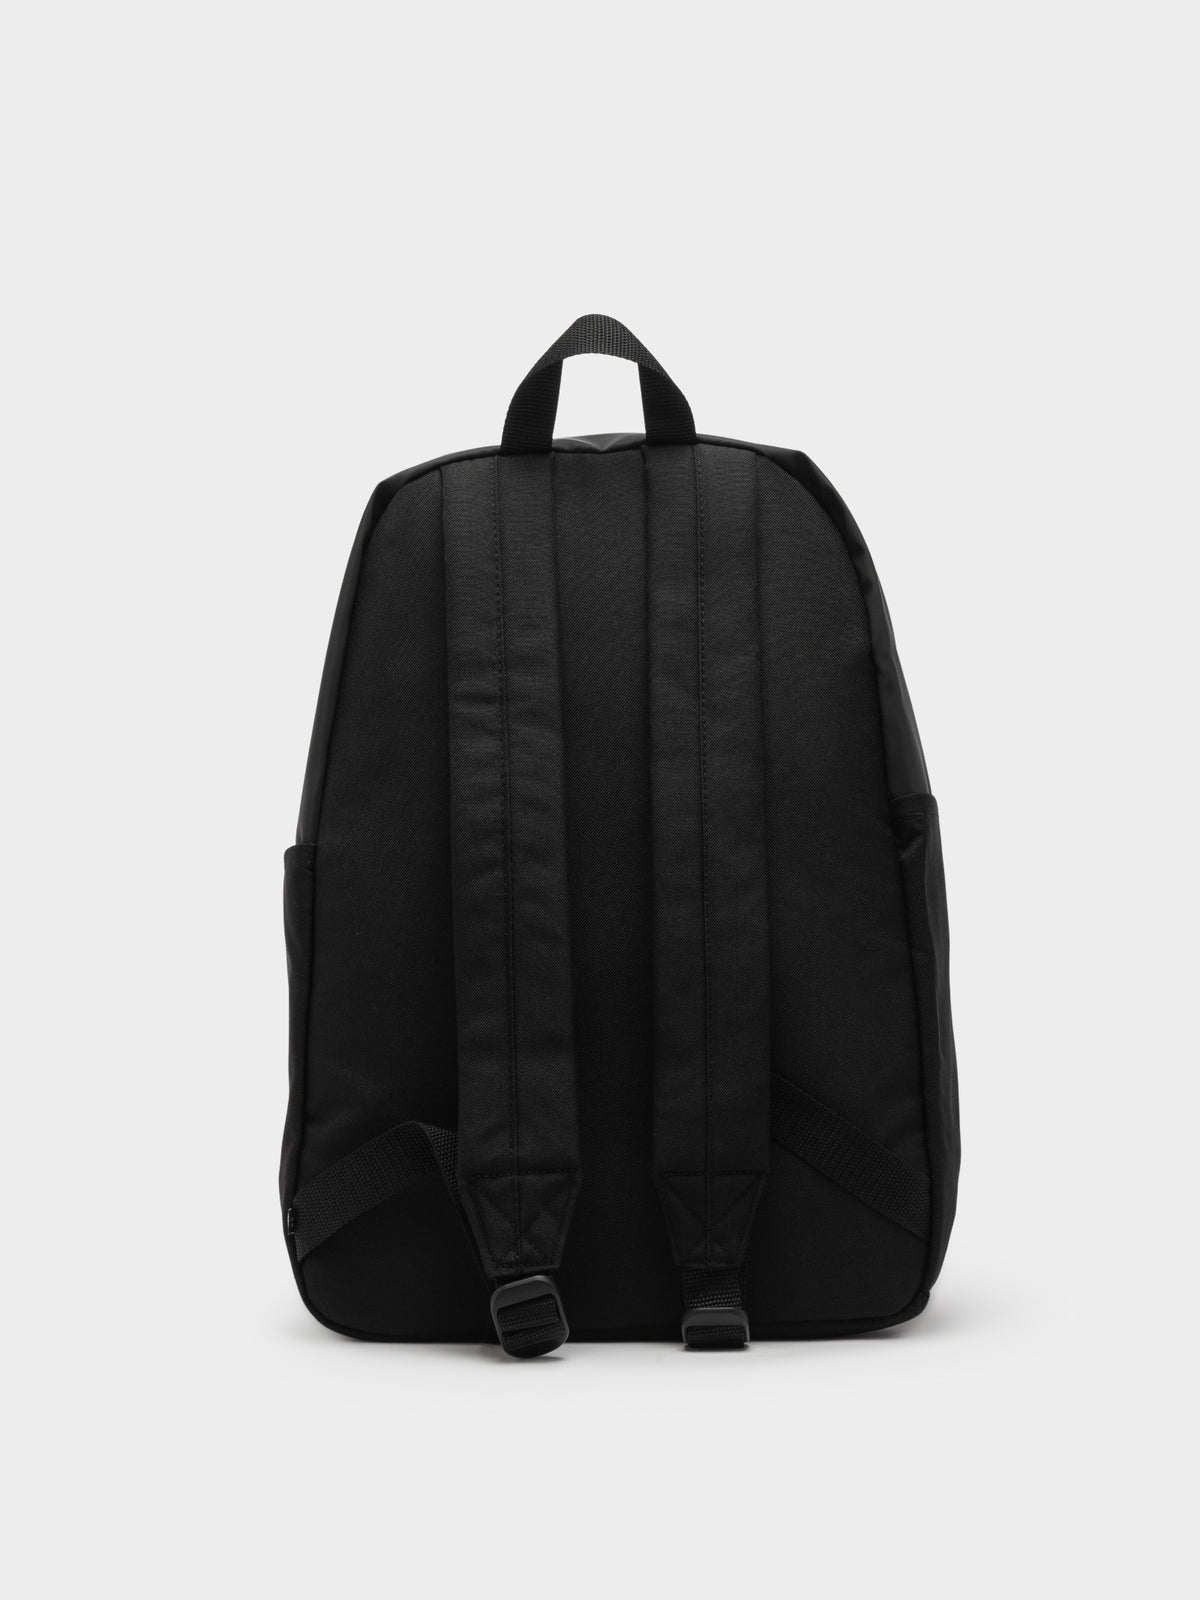 Adicolor Archive Backpack in Black